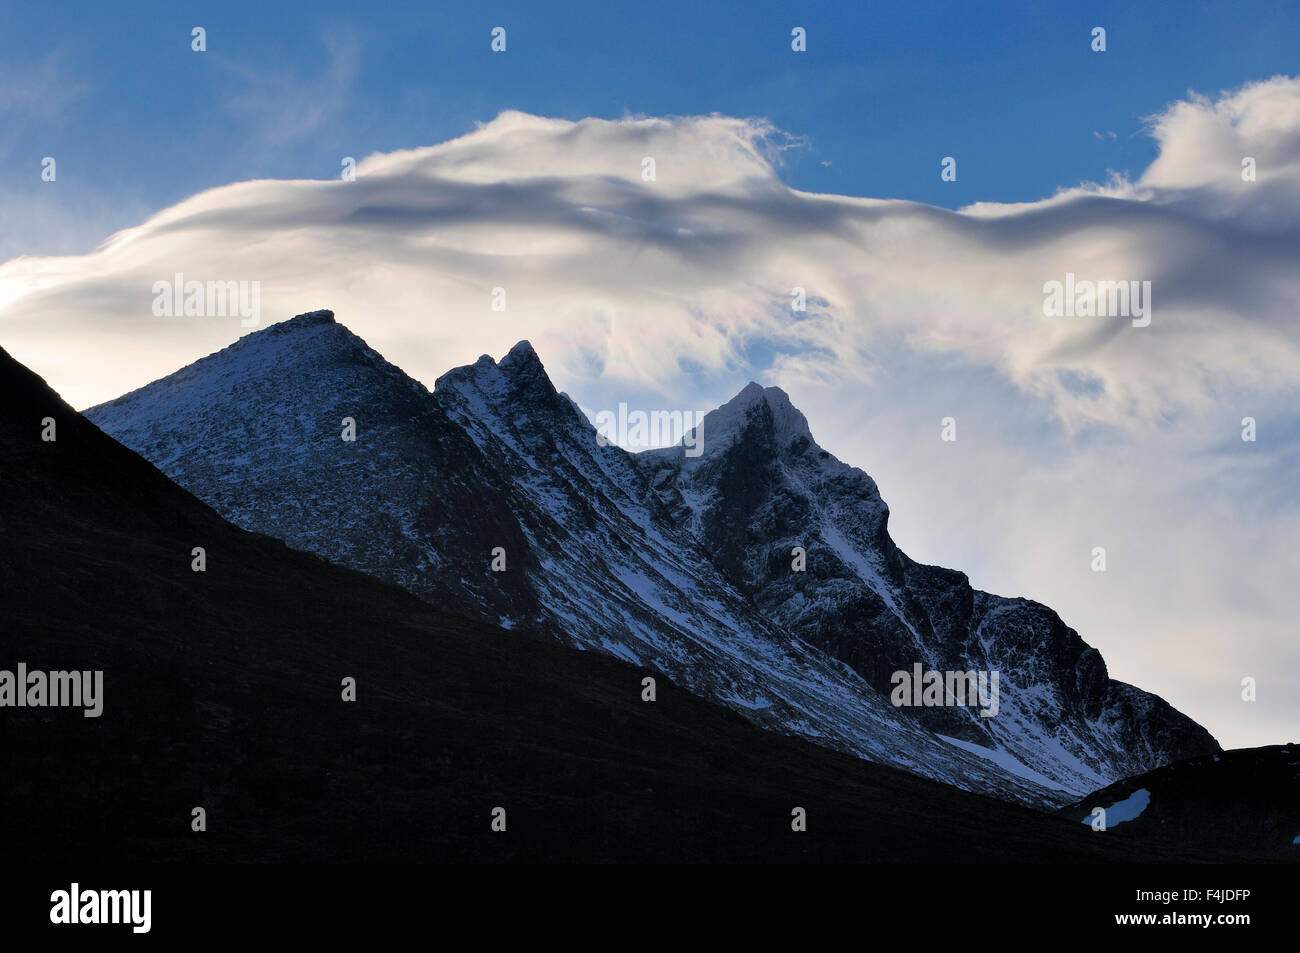 La Scandinavie, la Norvège, montagnes aux sommets enneigés against sky Banque D'Images